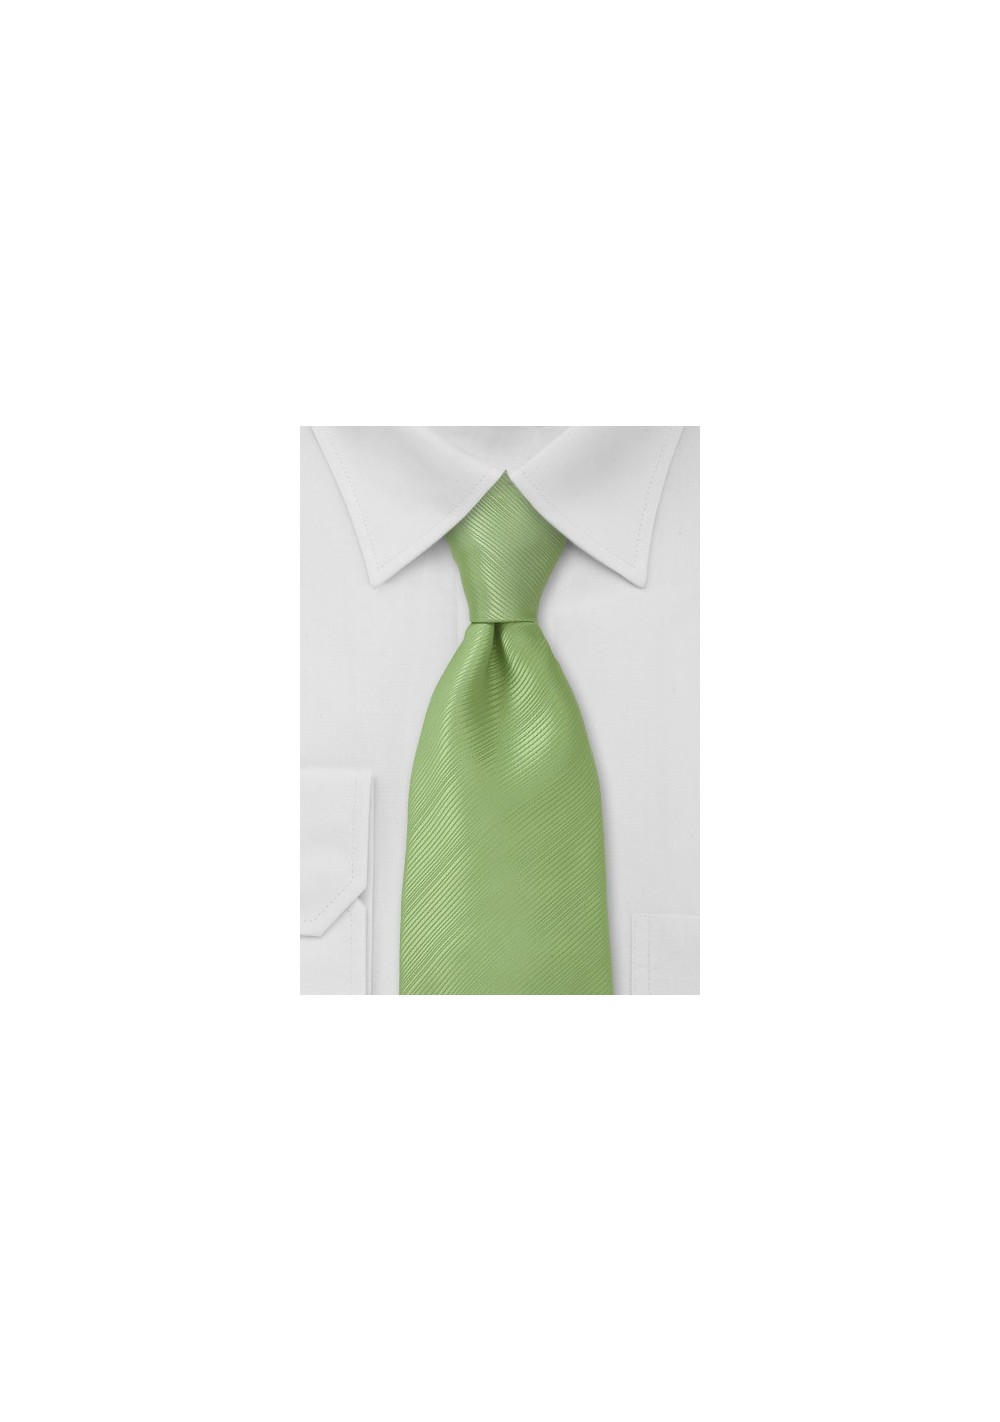 Mint Green Mens Tie